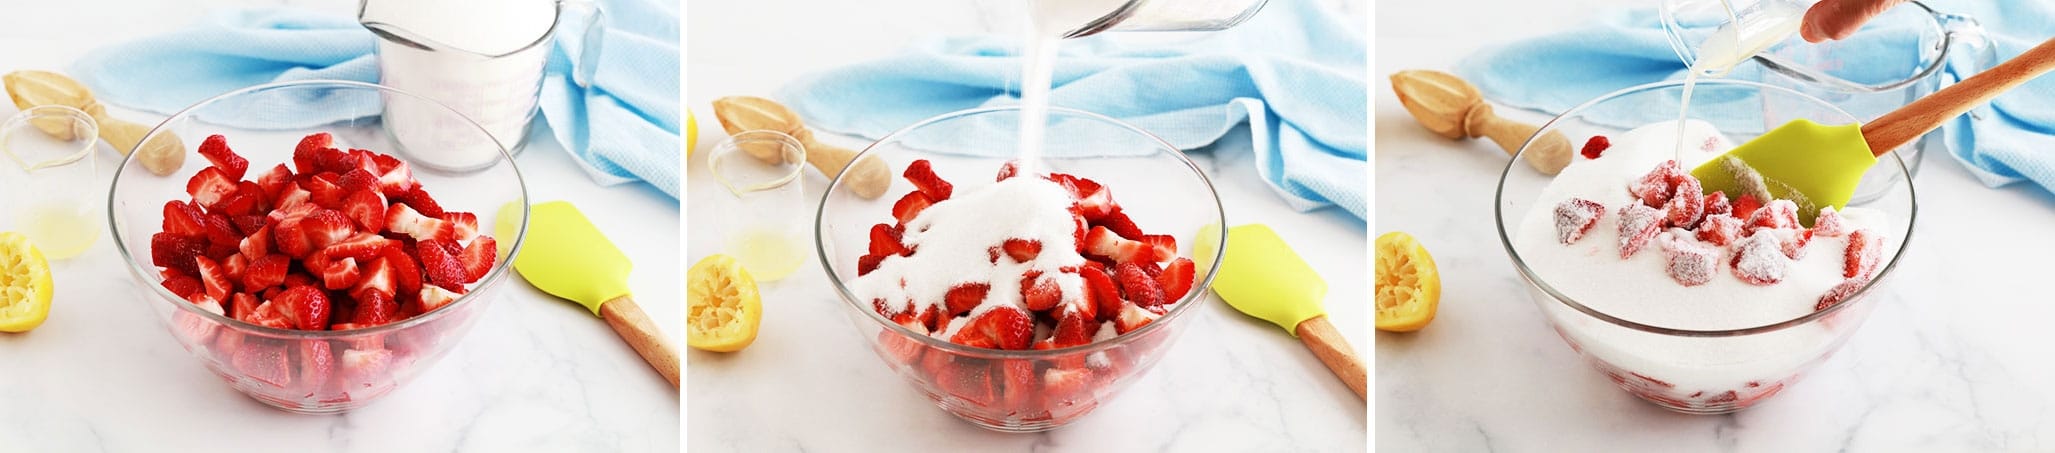 Confiture de fraises traditionnelle sans pectine recette facile_ETAPE 1 : mélanger les fraises, le sucre et le jus de citron